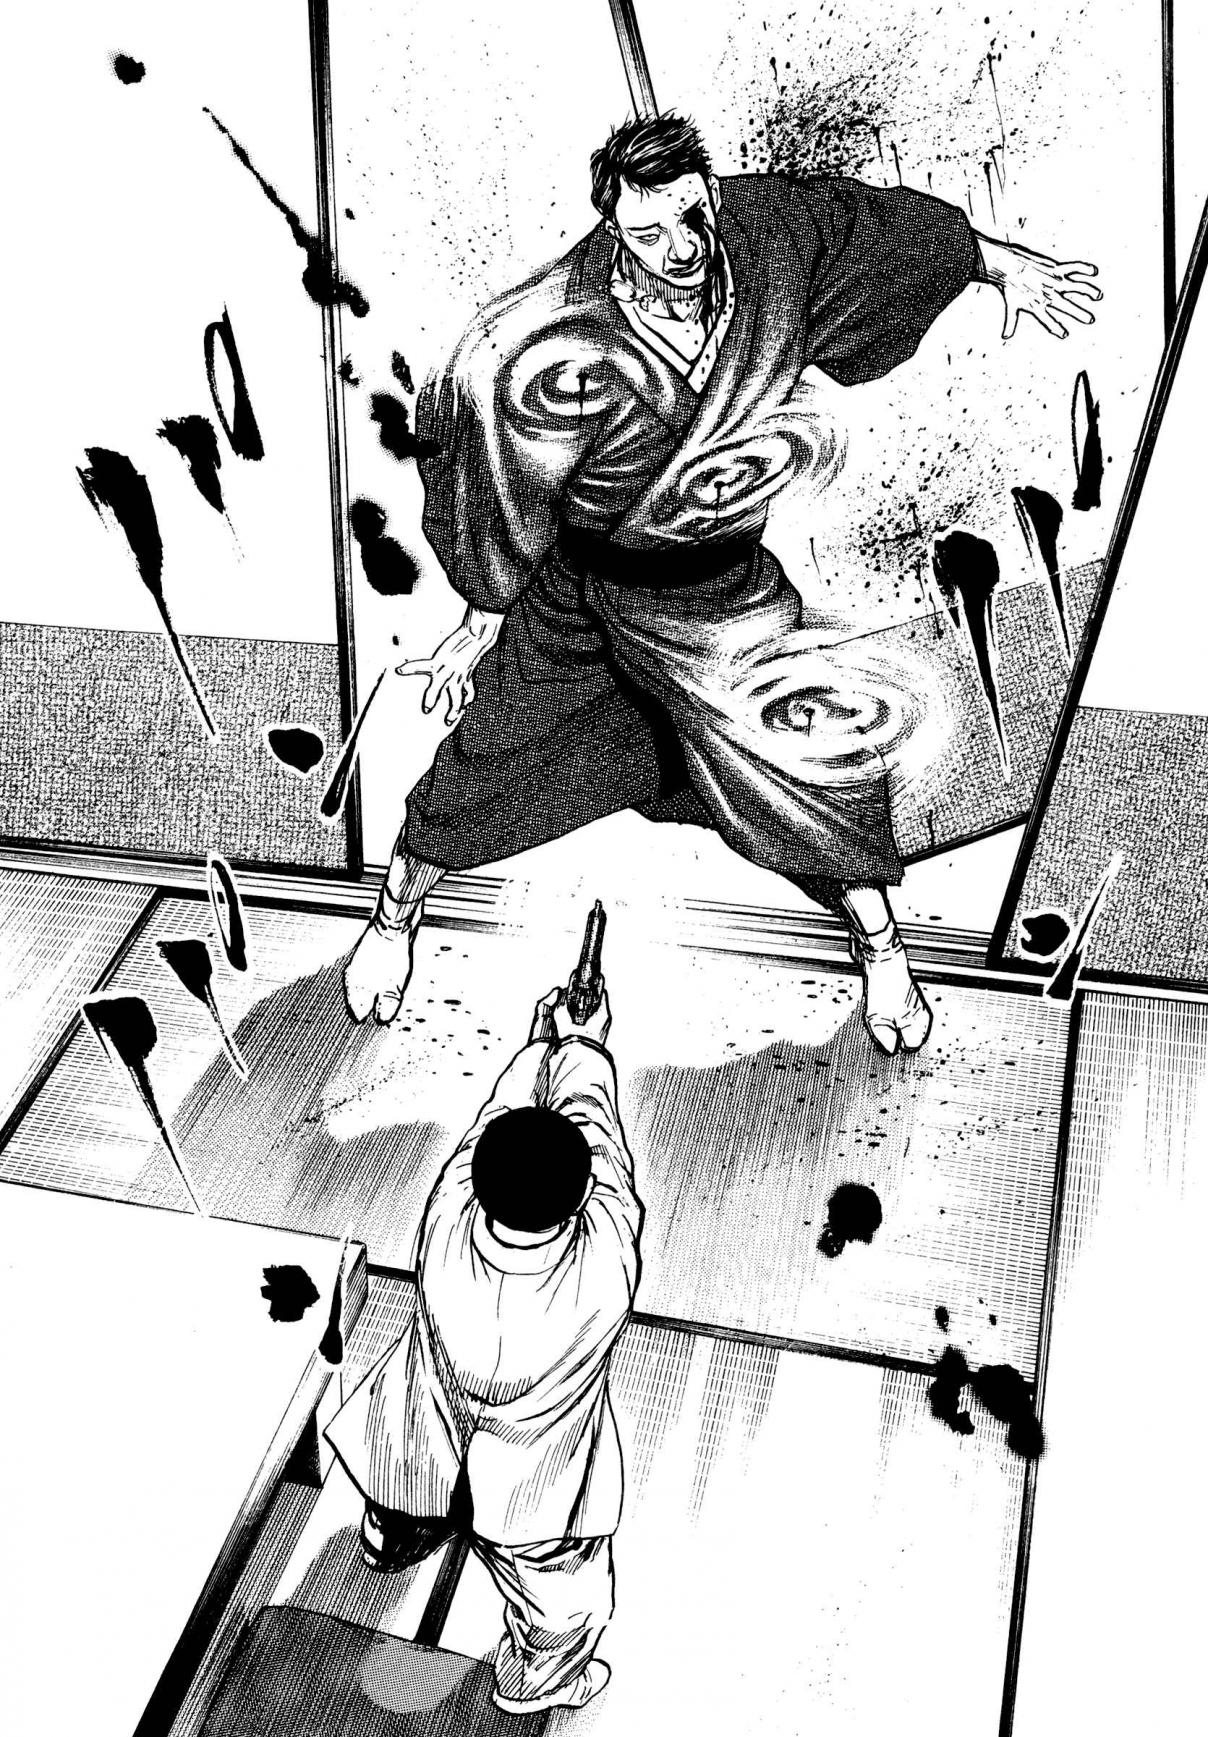 Kizu Darake no Jinsei Vol. 4 Ch. 23 Betrayal